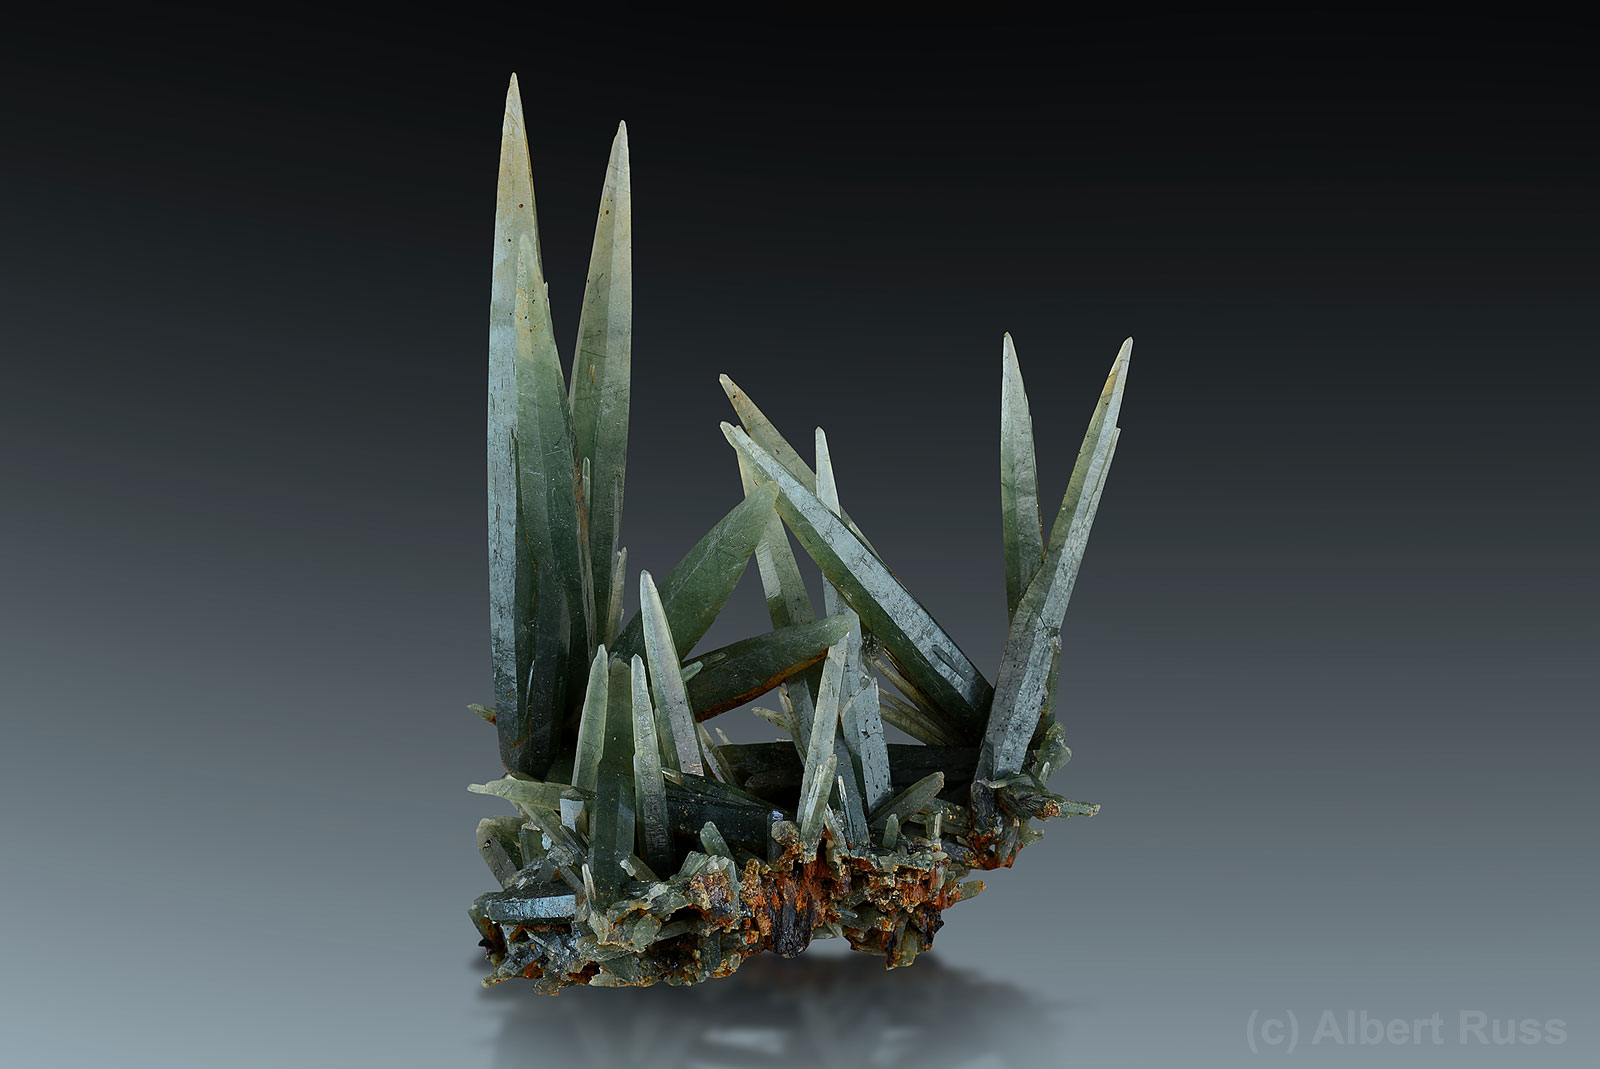 Prasem (green quartz) crystals from Serifos, Greece